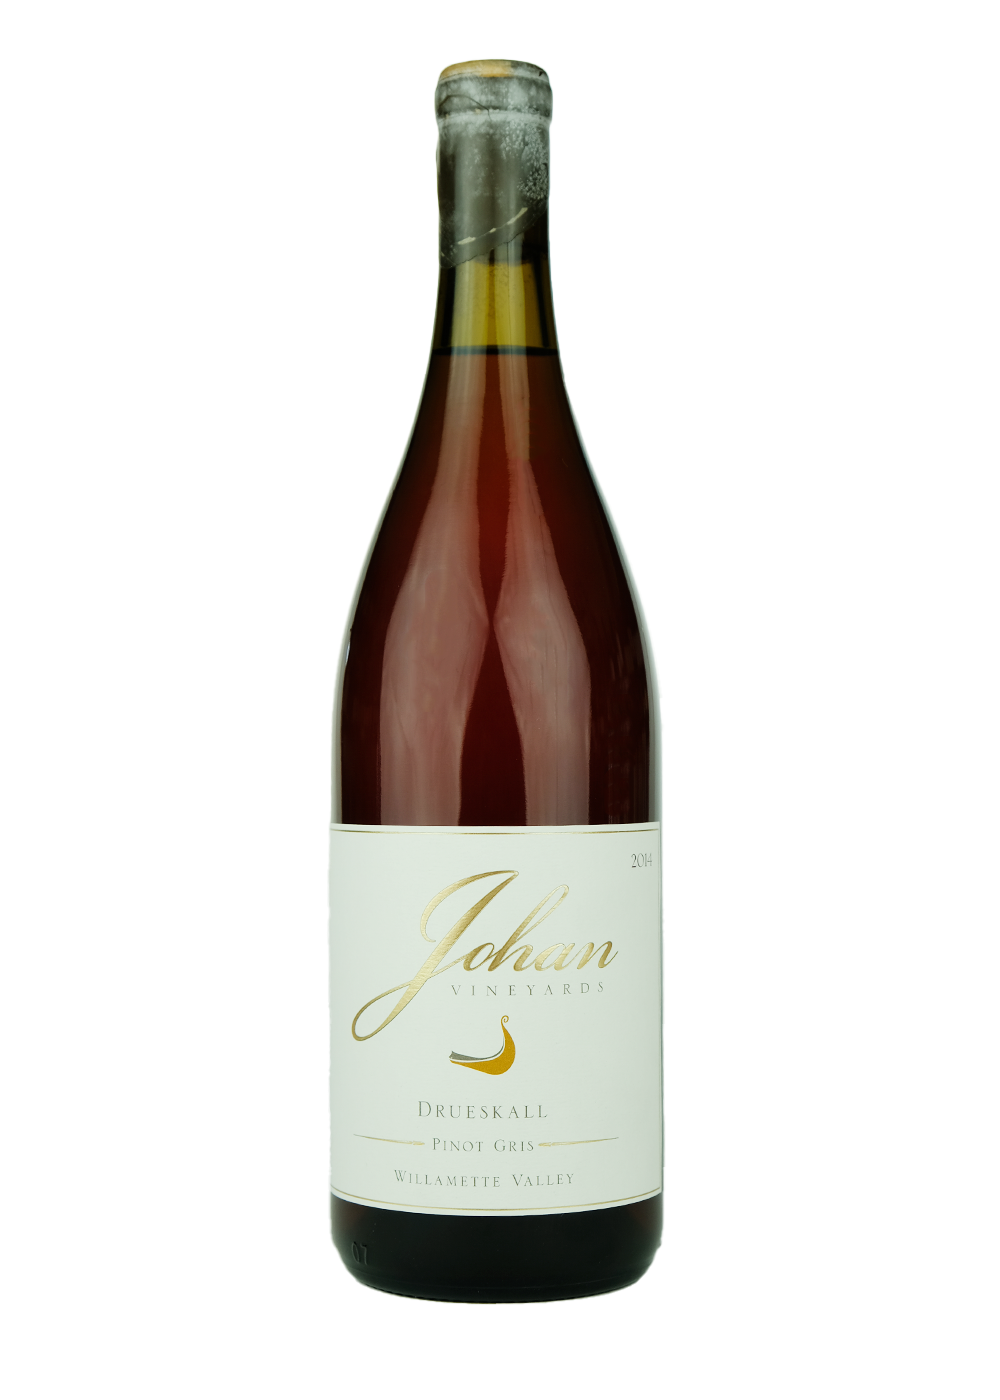 Johan 2014 Pinot Gris 'Drueskall'